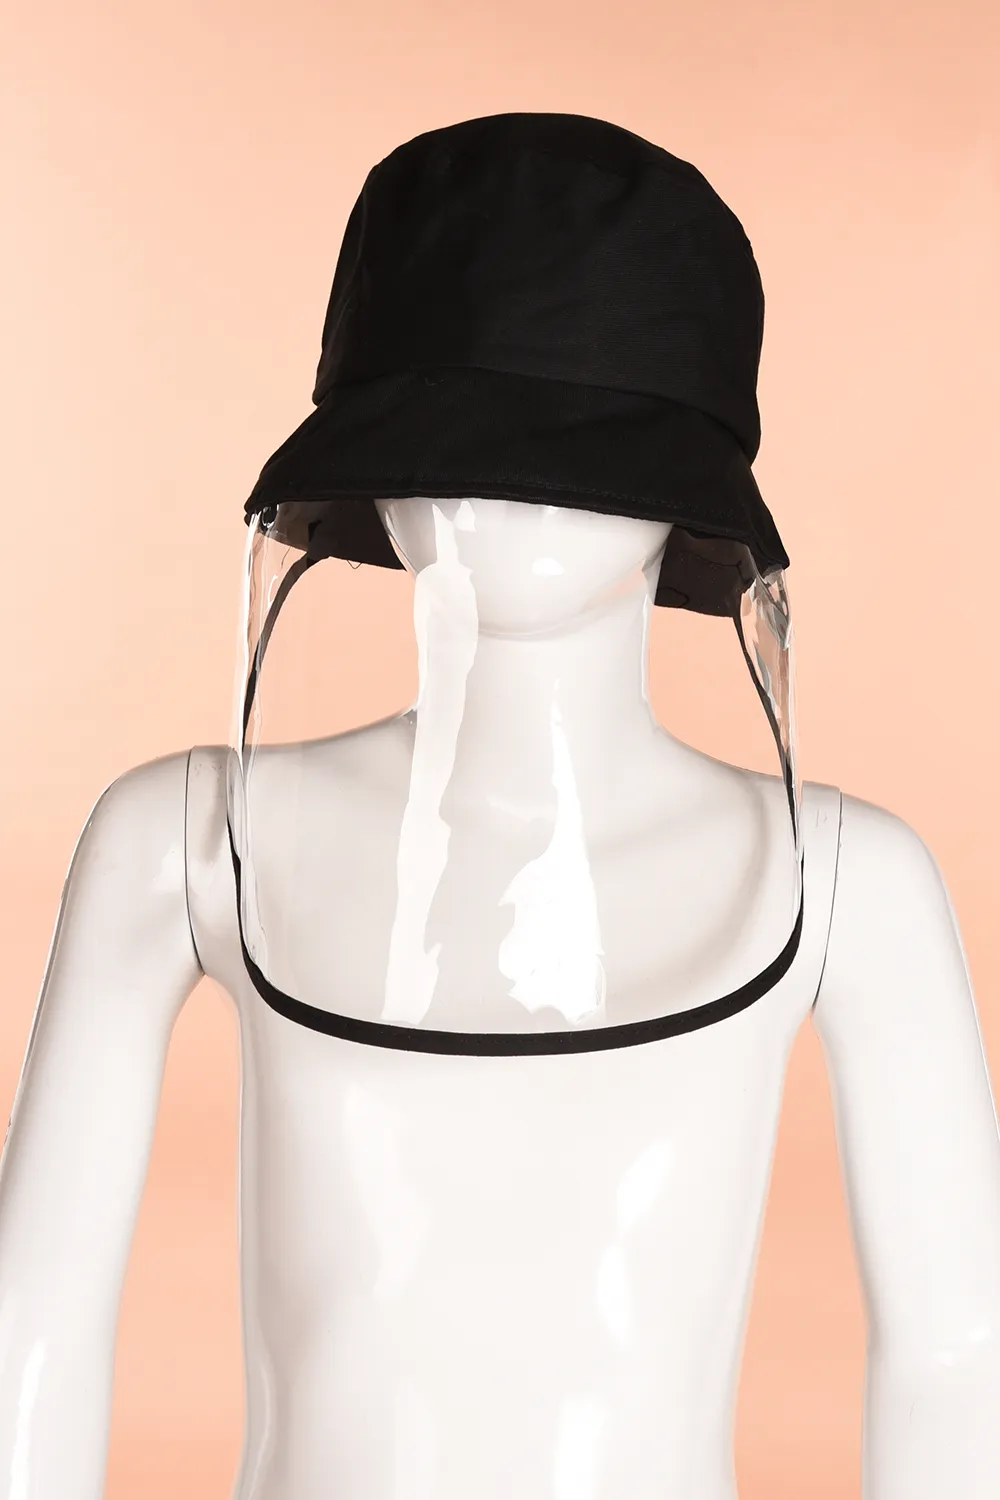 新しい安全防塵防塵マスクブラックカバー帽子アンチスピトルアンチダストカバー全面的な目の保護マスク